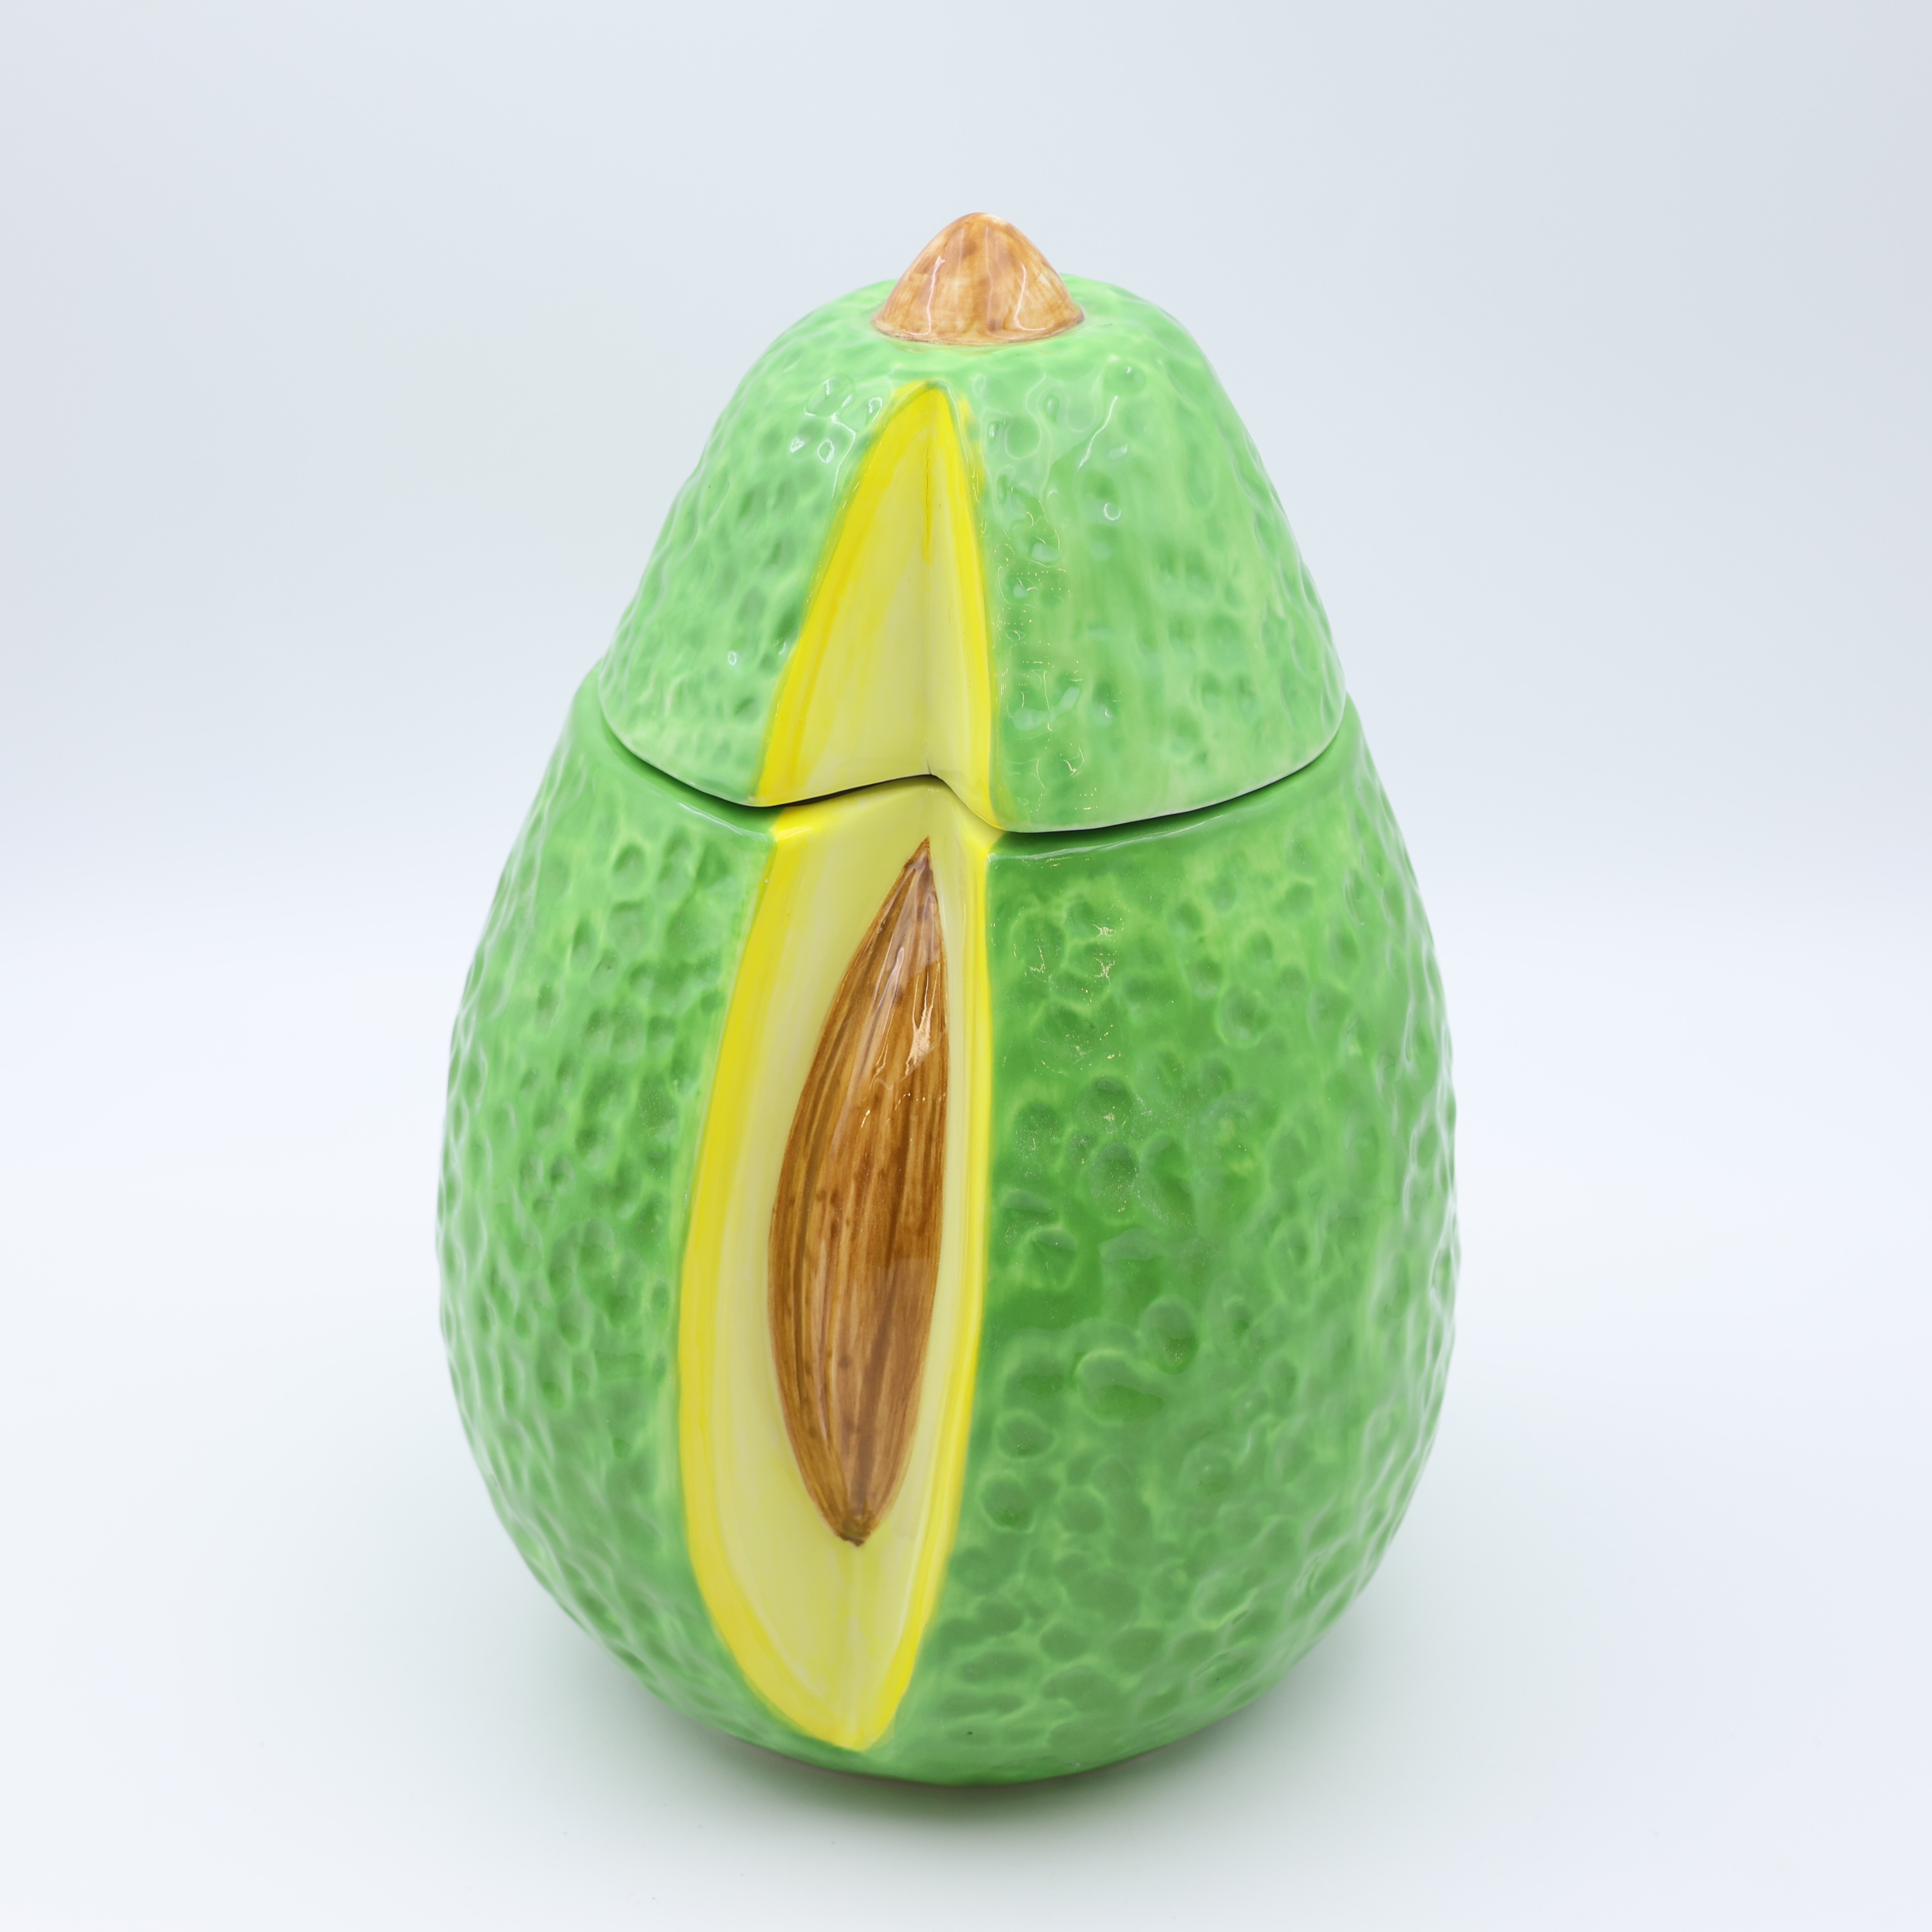 Ceramic Avocado Figura at Jar cum Lid